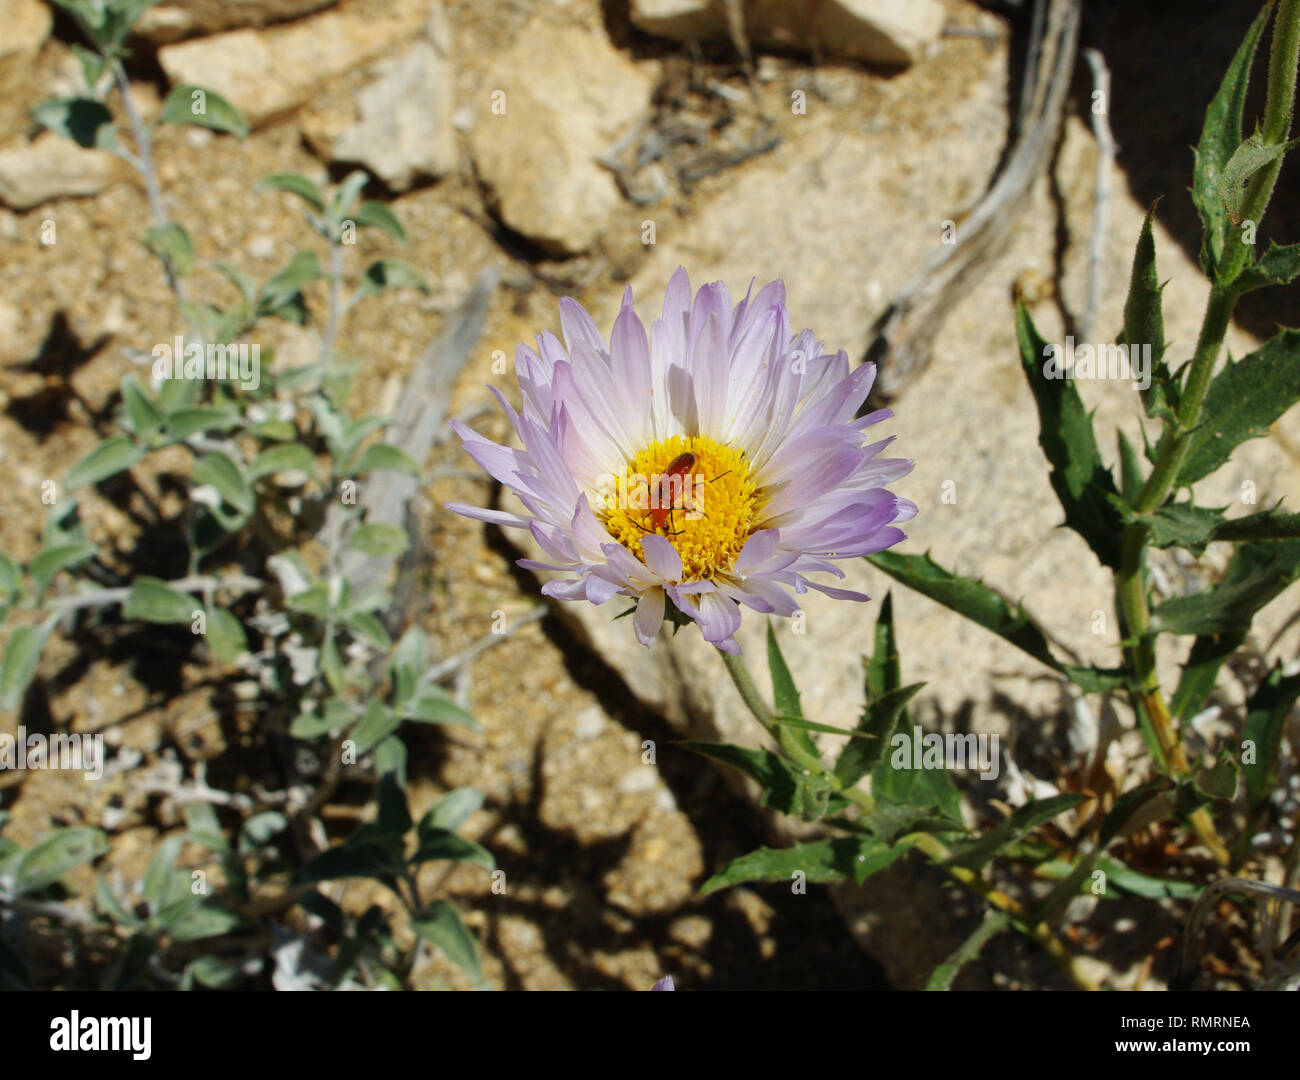 Une délicate fleur pourpre à la recherche dans le désert de Mojave avec un centre jaune, survivant dans la chaleur dure.partie de l'écosystème complexe et prospère Banque D'Images